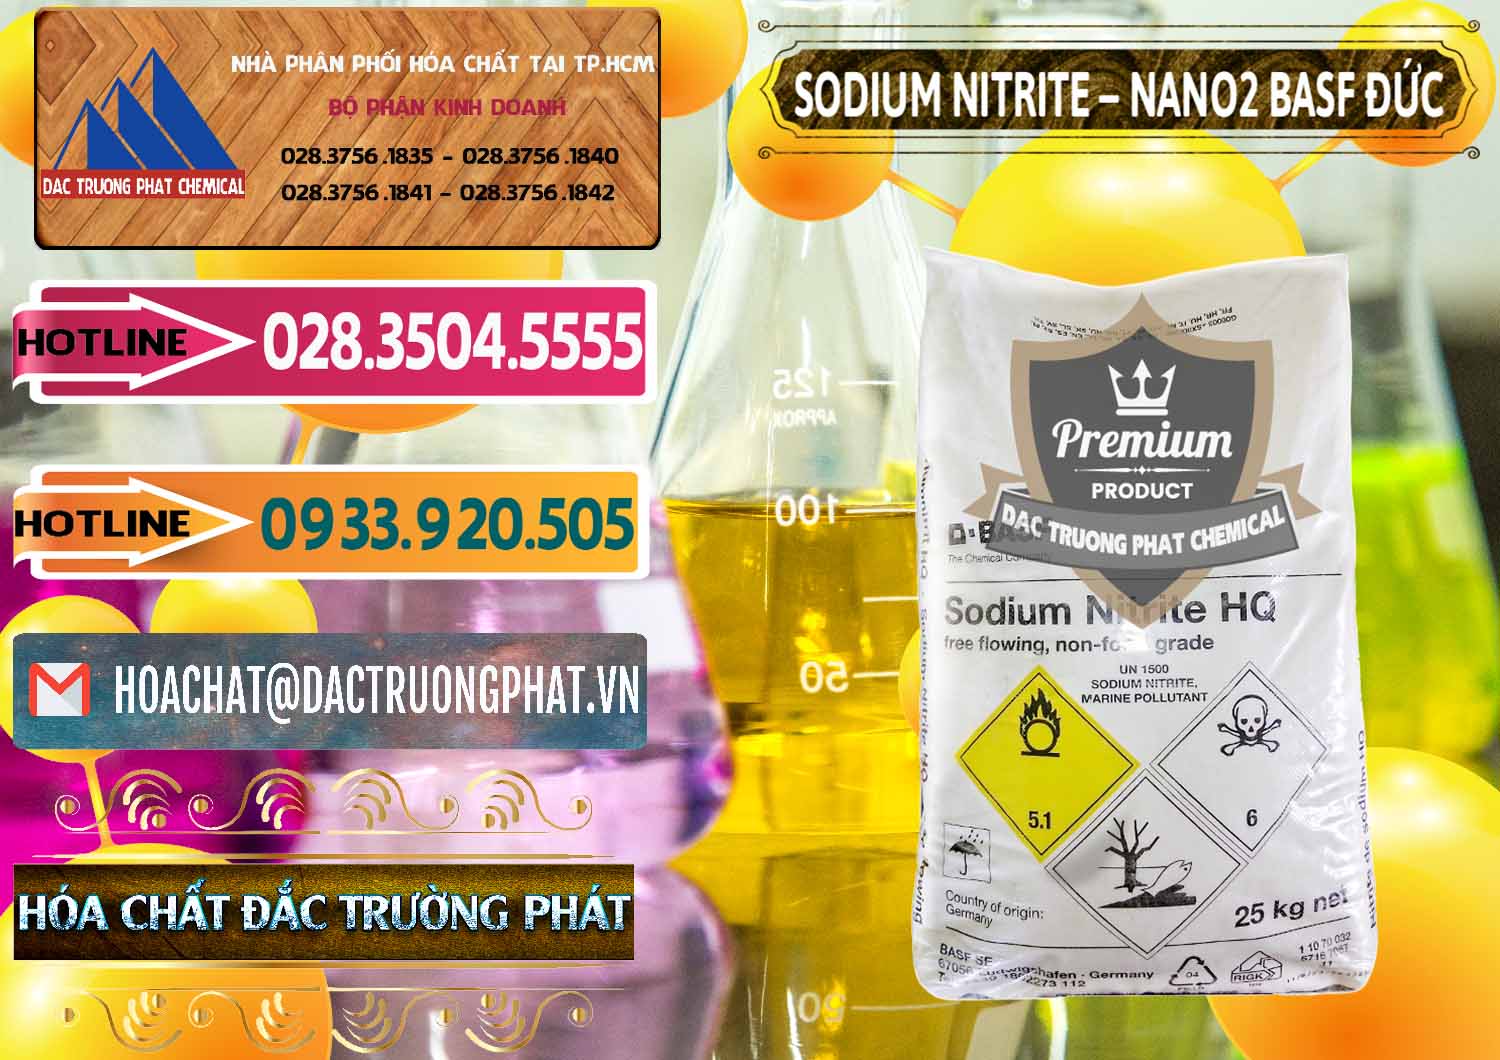 Nơi chuyên bán ( cung cấp ) Sodium Nitrite - NANO2 Đức BASF Germany - 0148 - Công ty chuyên cung cấp ( kinh doanh ) hóa chất tại TP.HCM - dactruongphat.vn